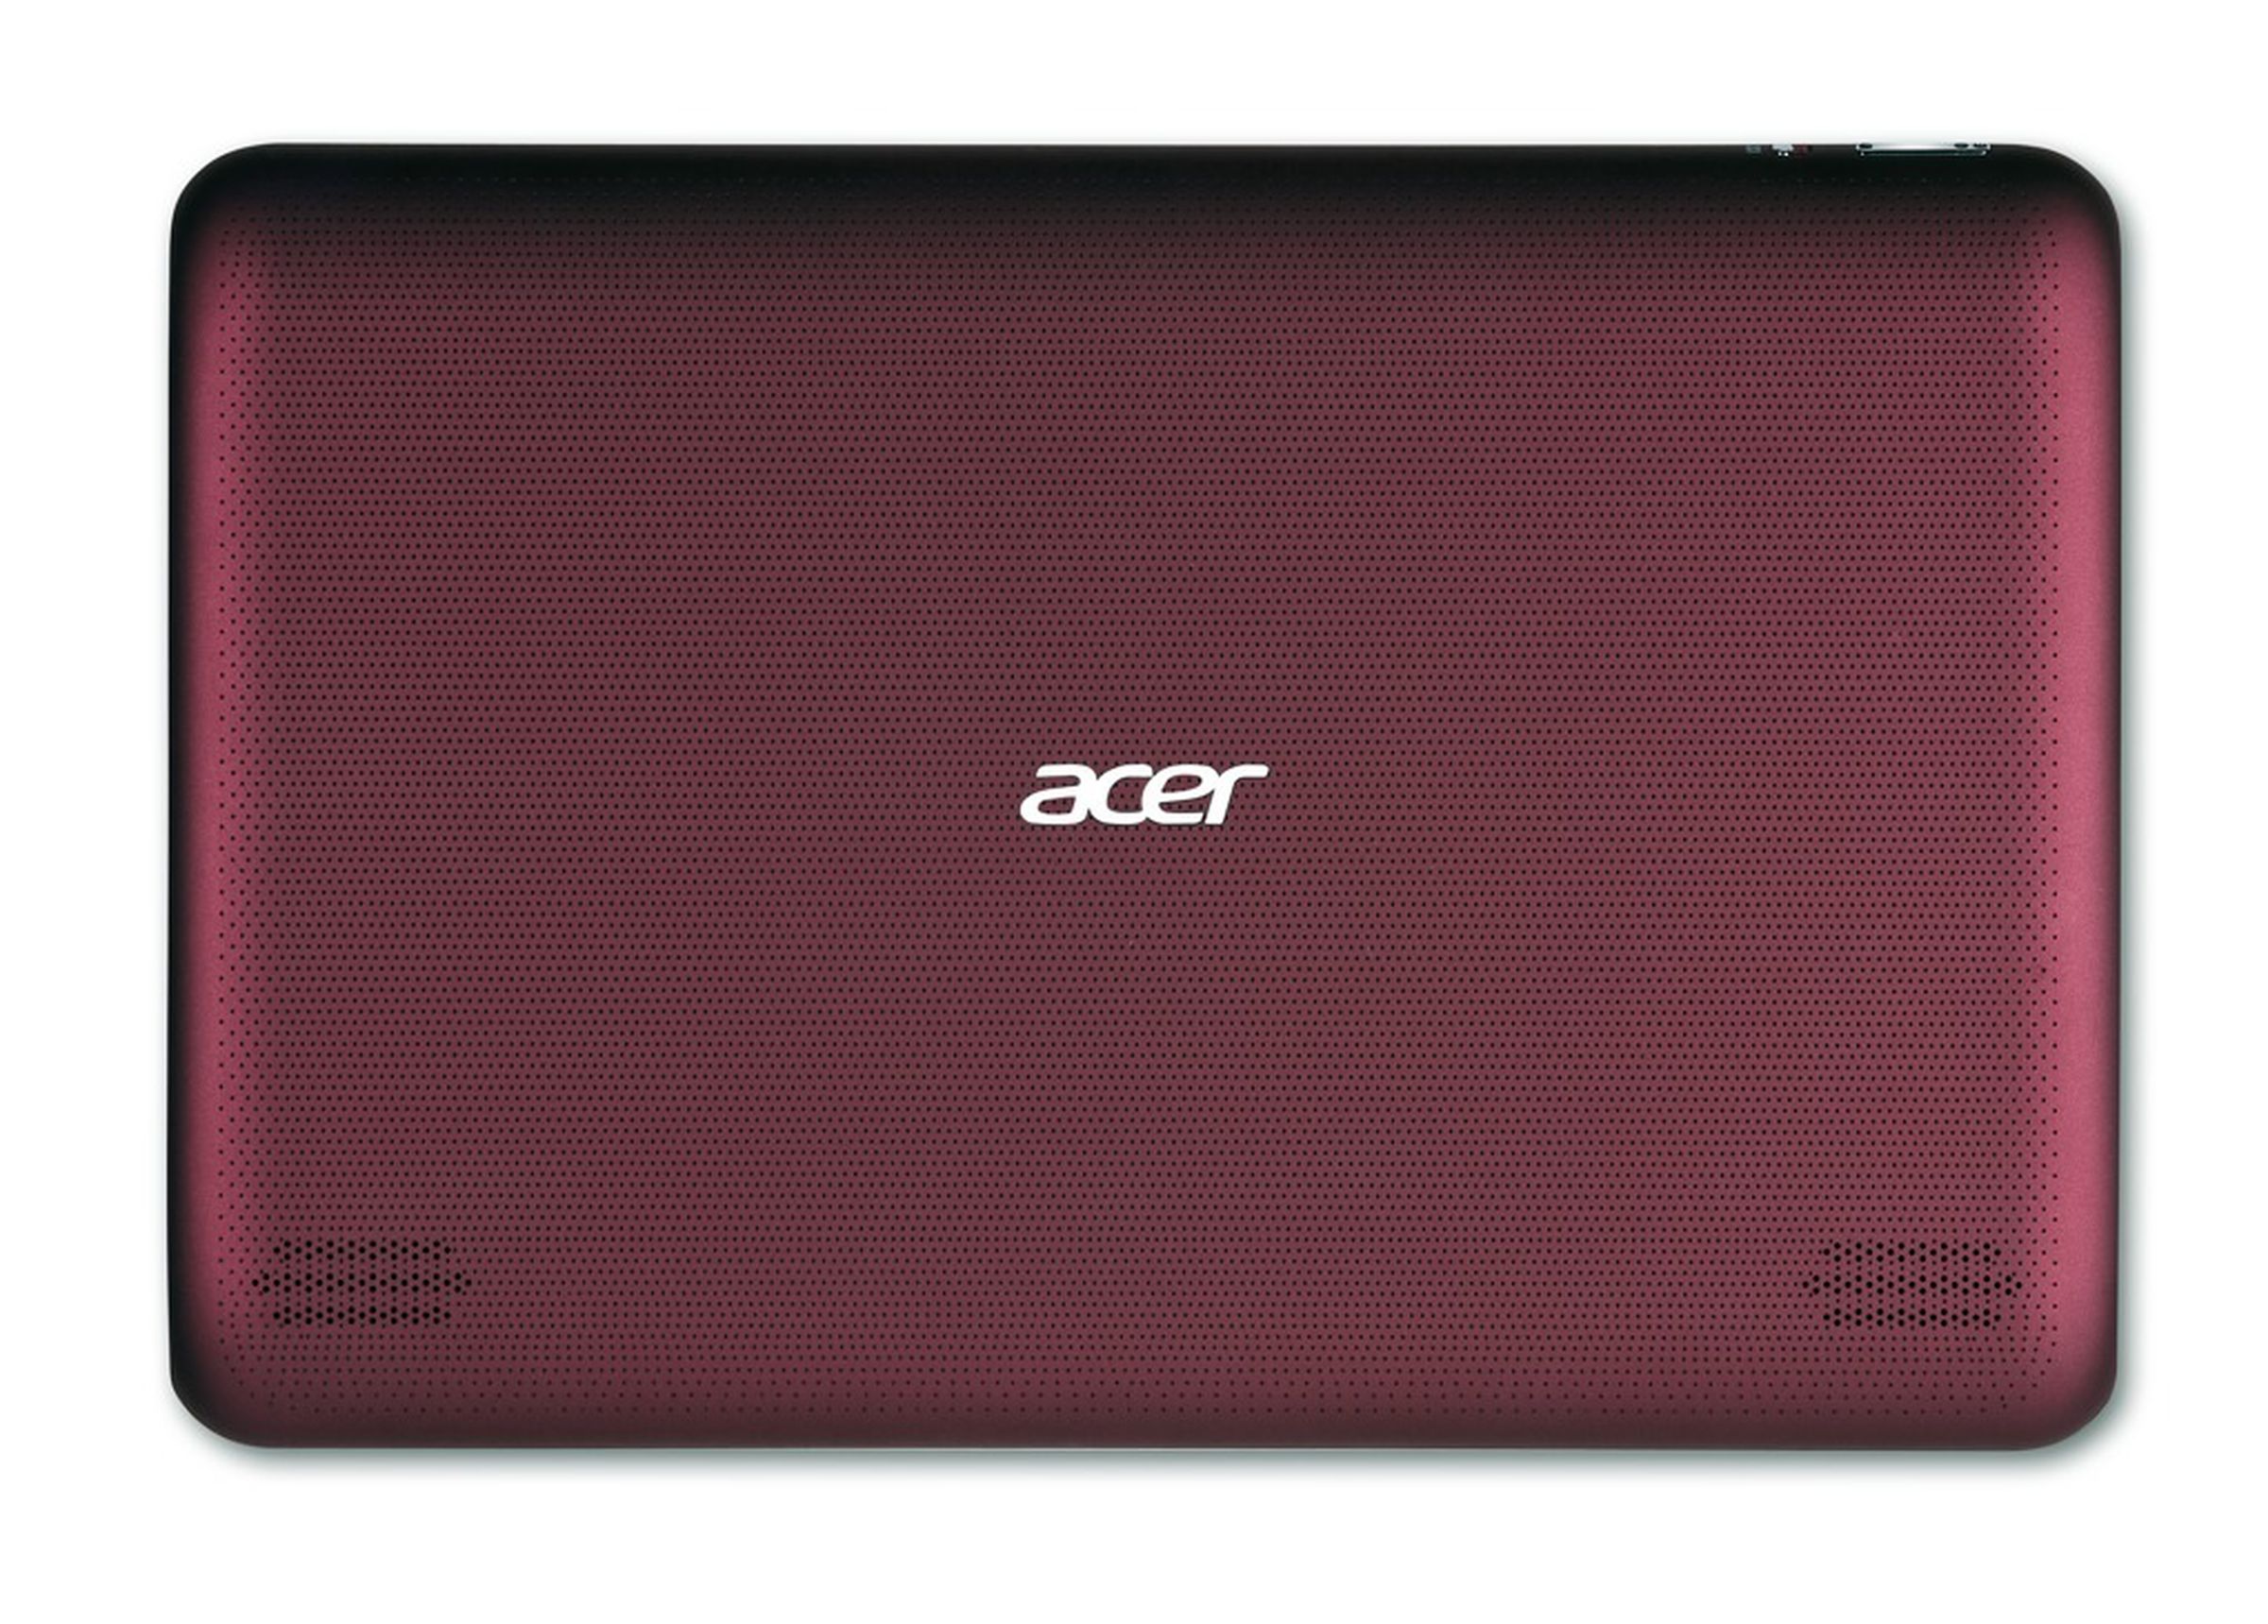 Acer Iconia A200 press photos